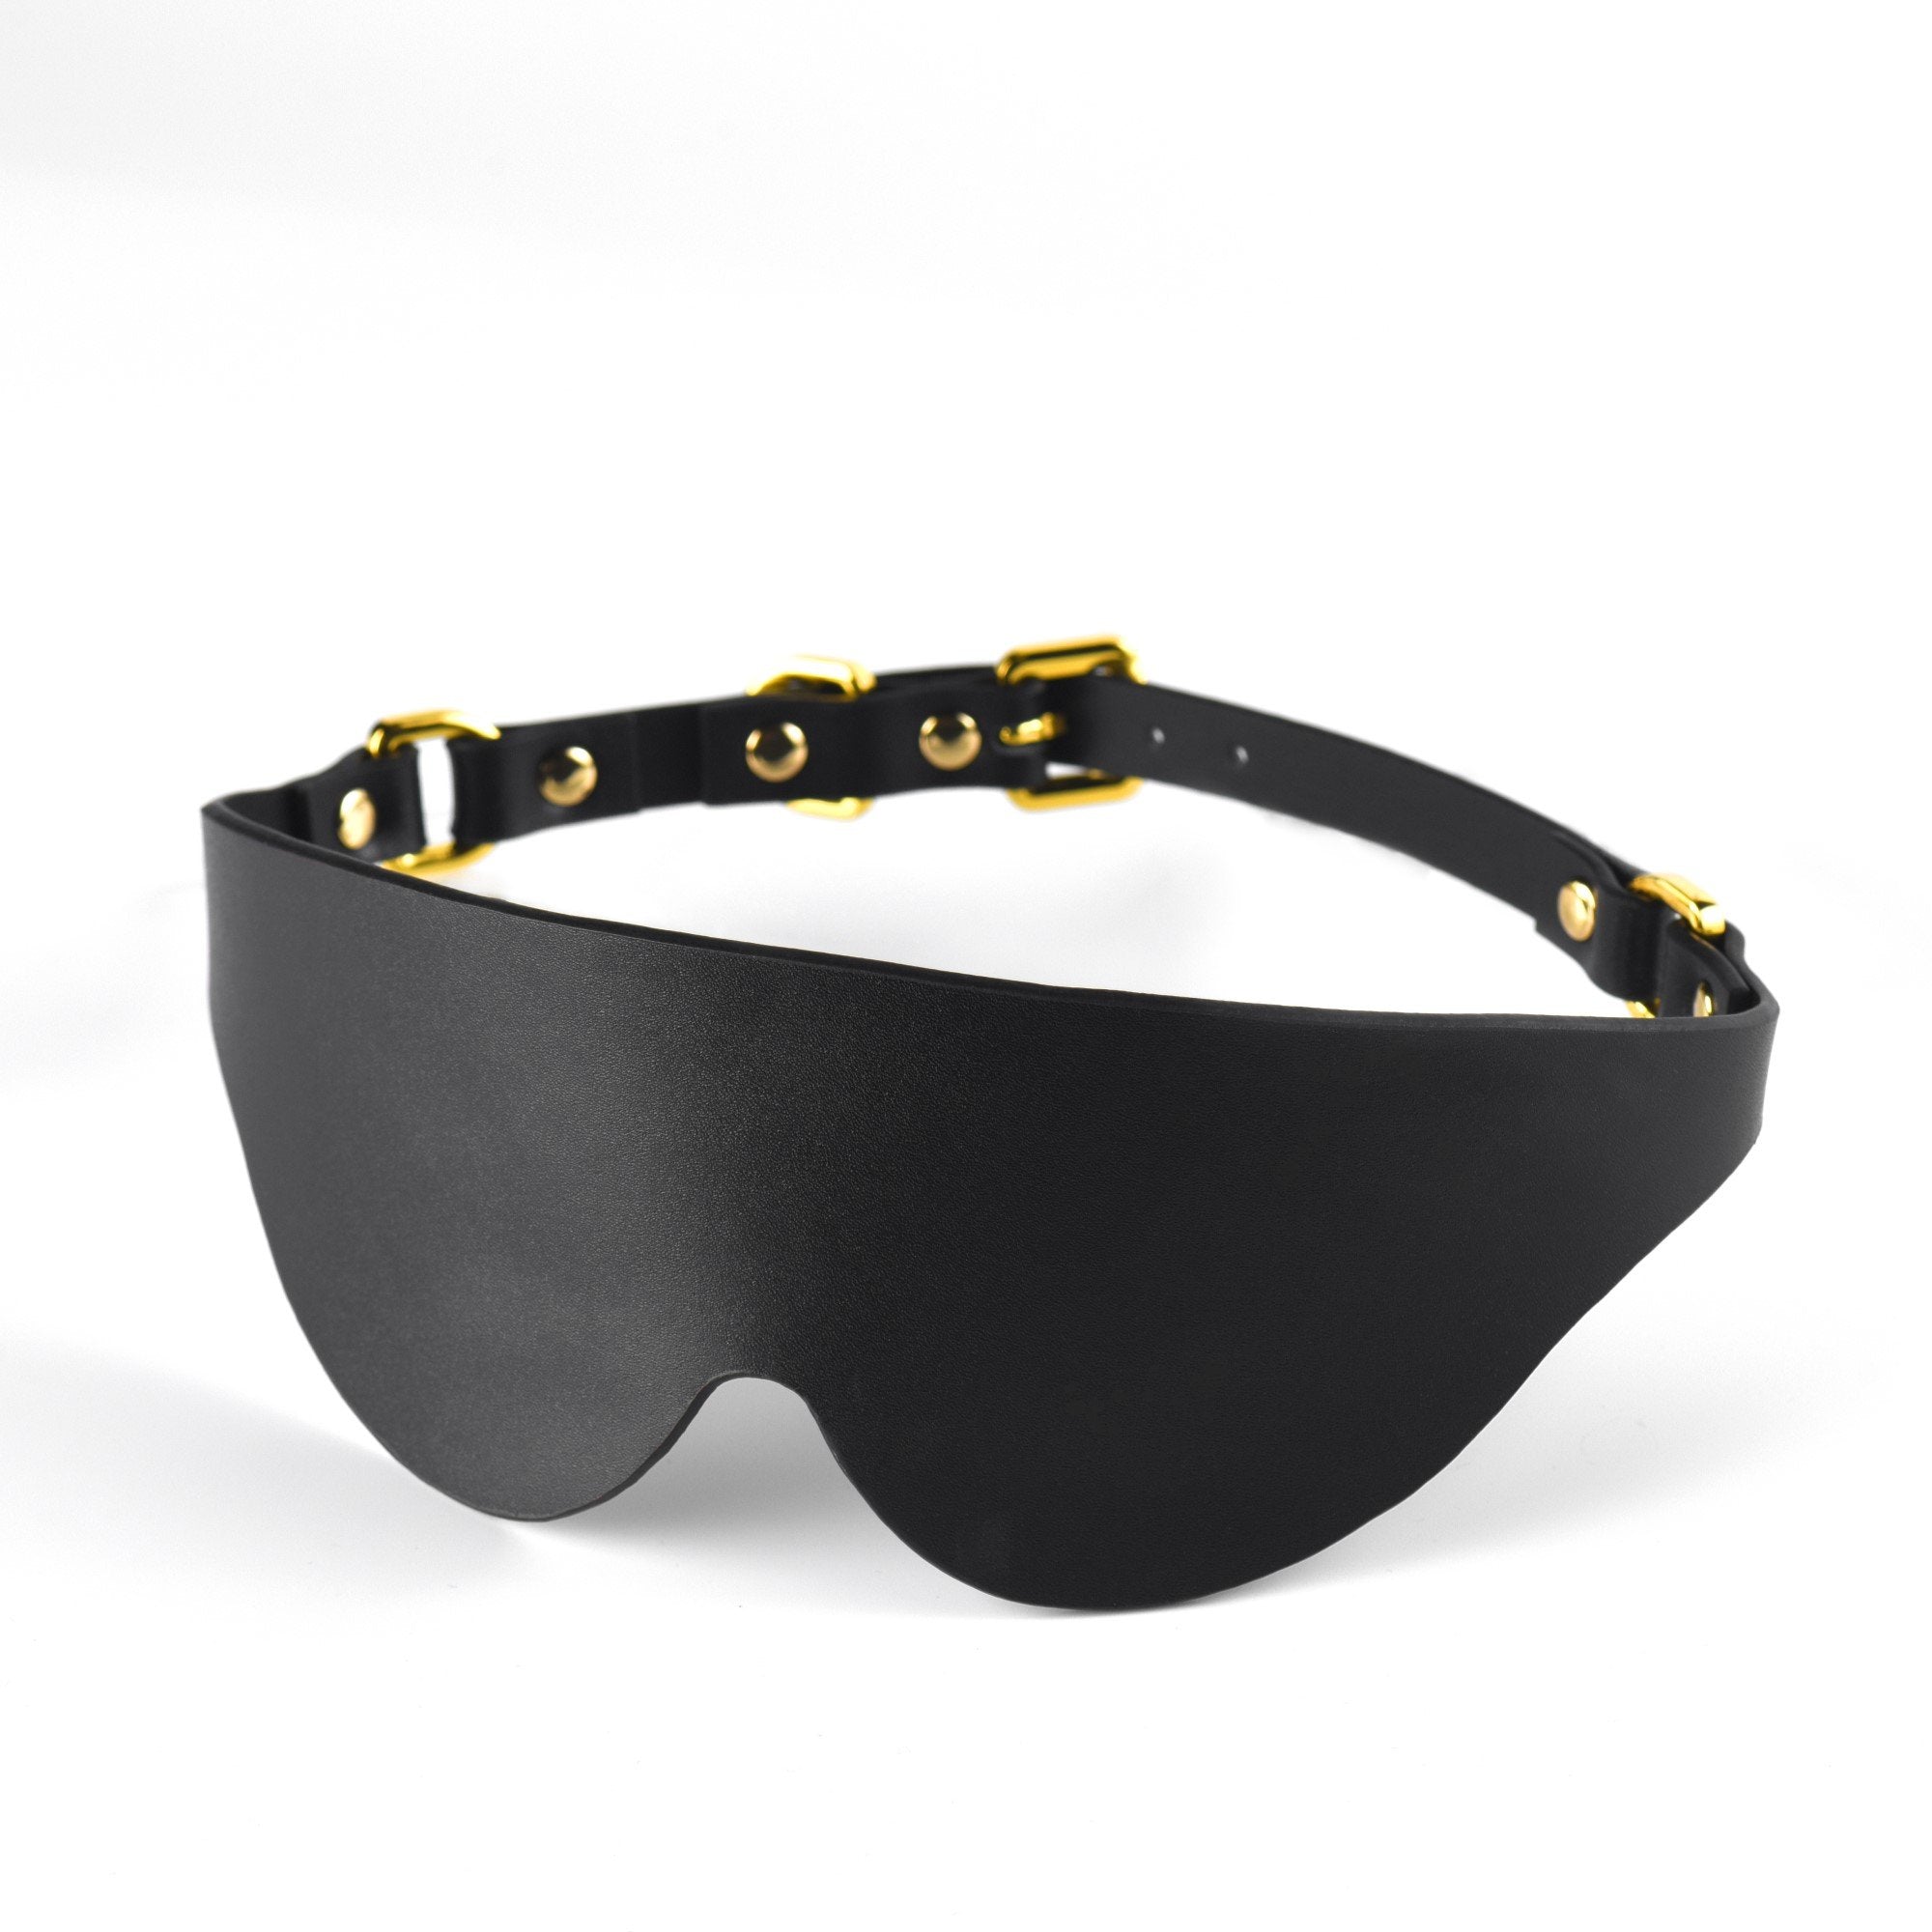 Luxury Italian Leather Blindfolds by UPKO